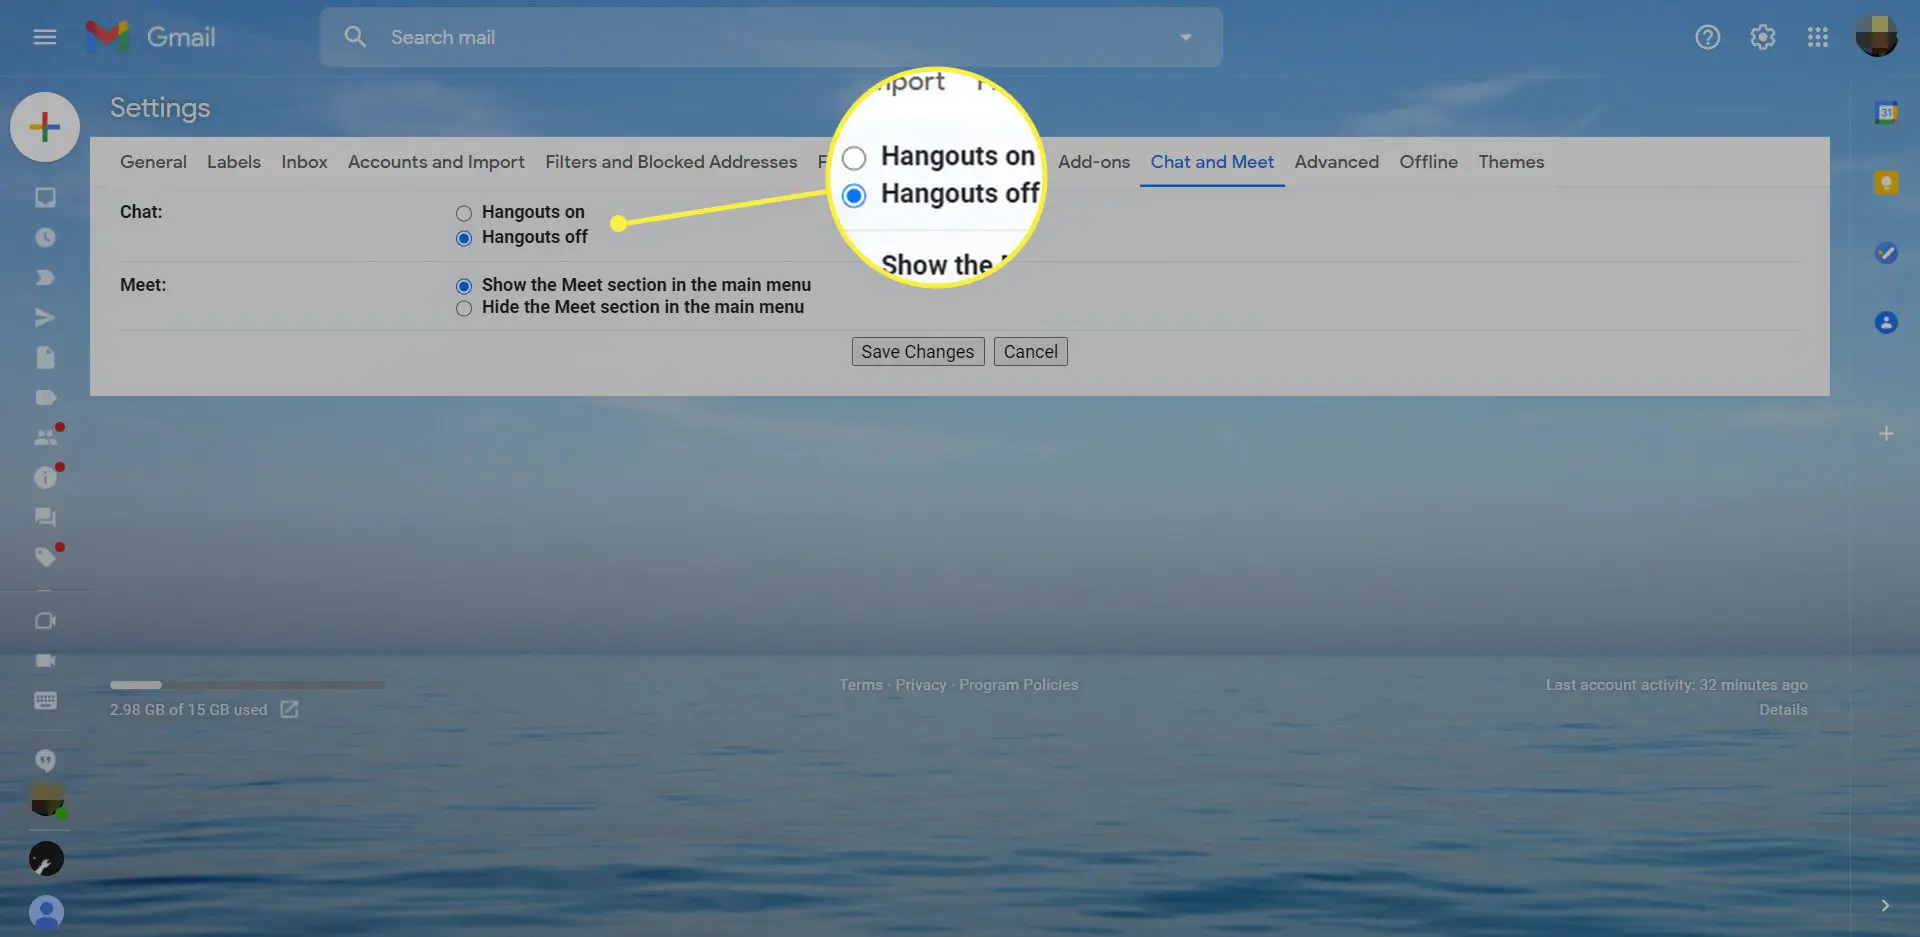 Configurações do Gmail com o botão Hangouts desativado em destaque